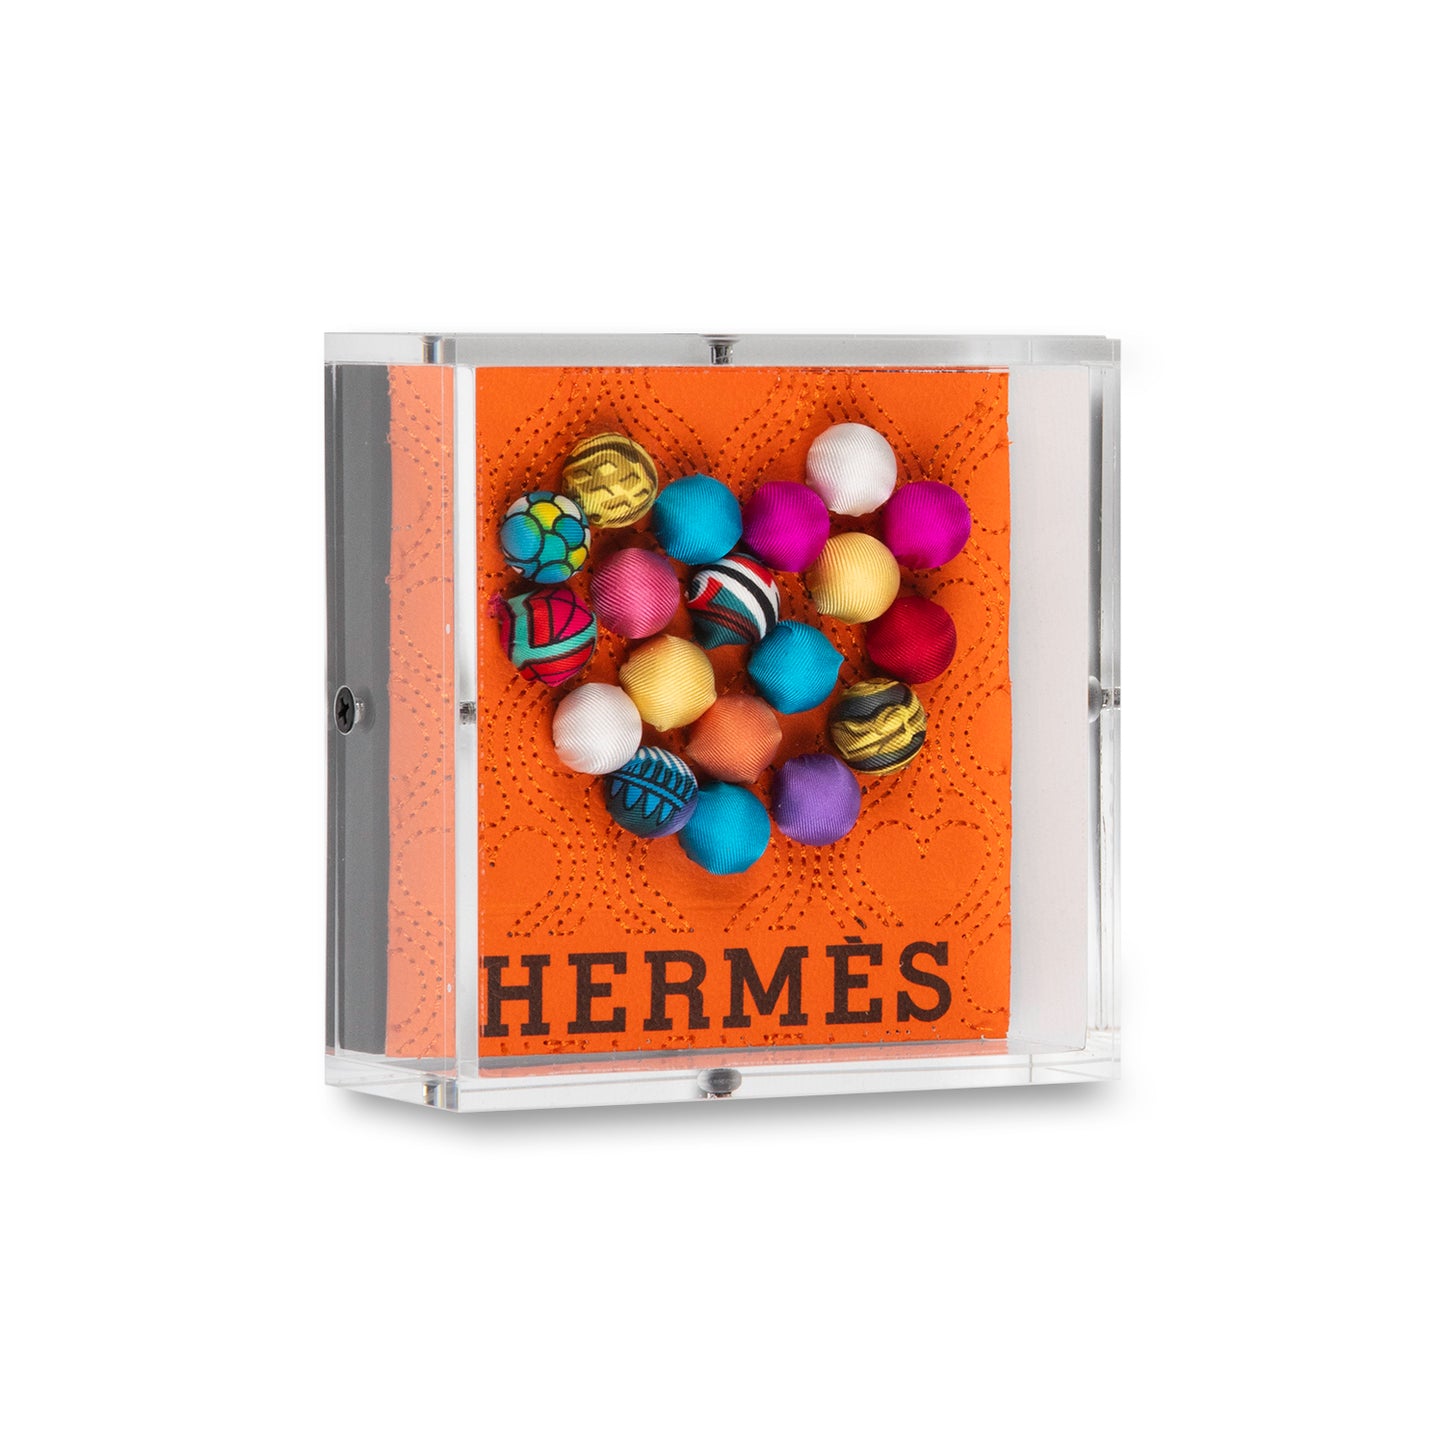 Petite Hermes Pom-Pom Heart by Stephen Wilson (5x5x2")